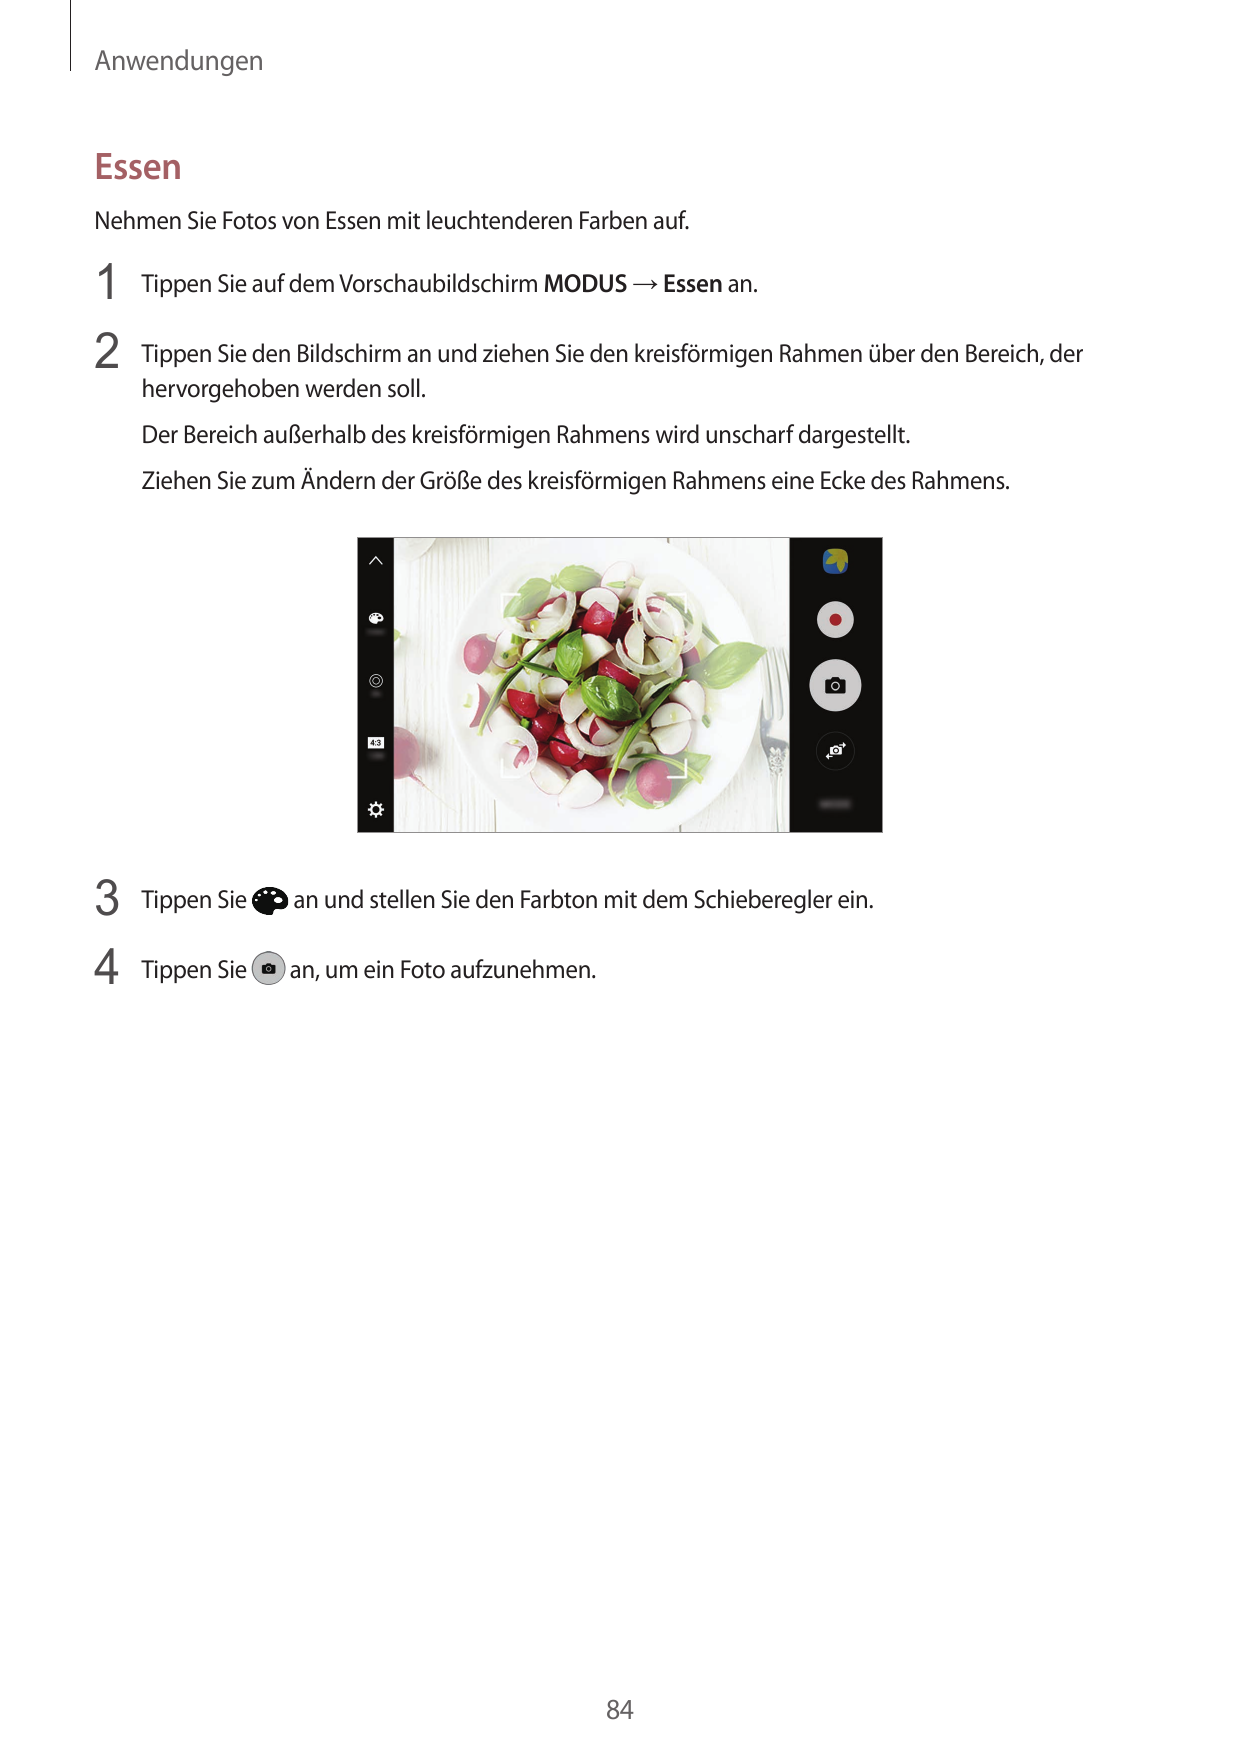 AnwendungenEssenNehmen Sie Fotos von Essen mit leuchtenderen Farben auf.1 Tippen Sie auf dem Vorschaubildschirm MODUS → Essen an